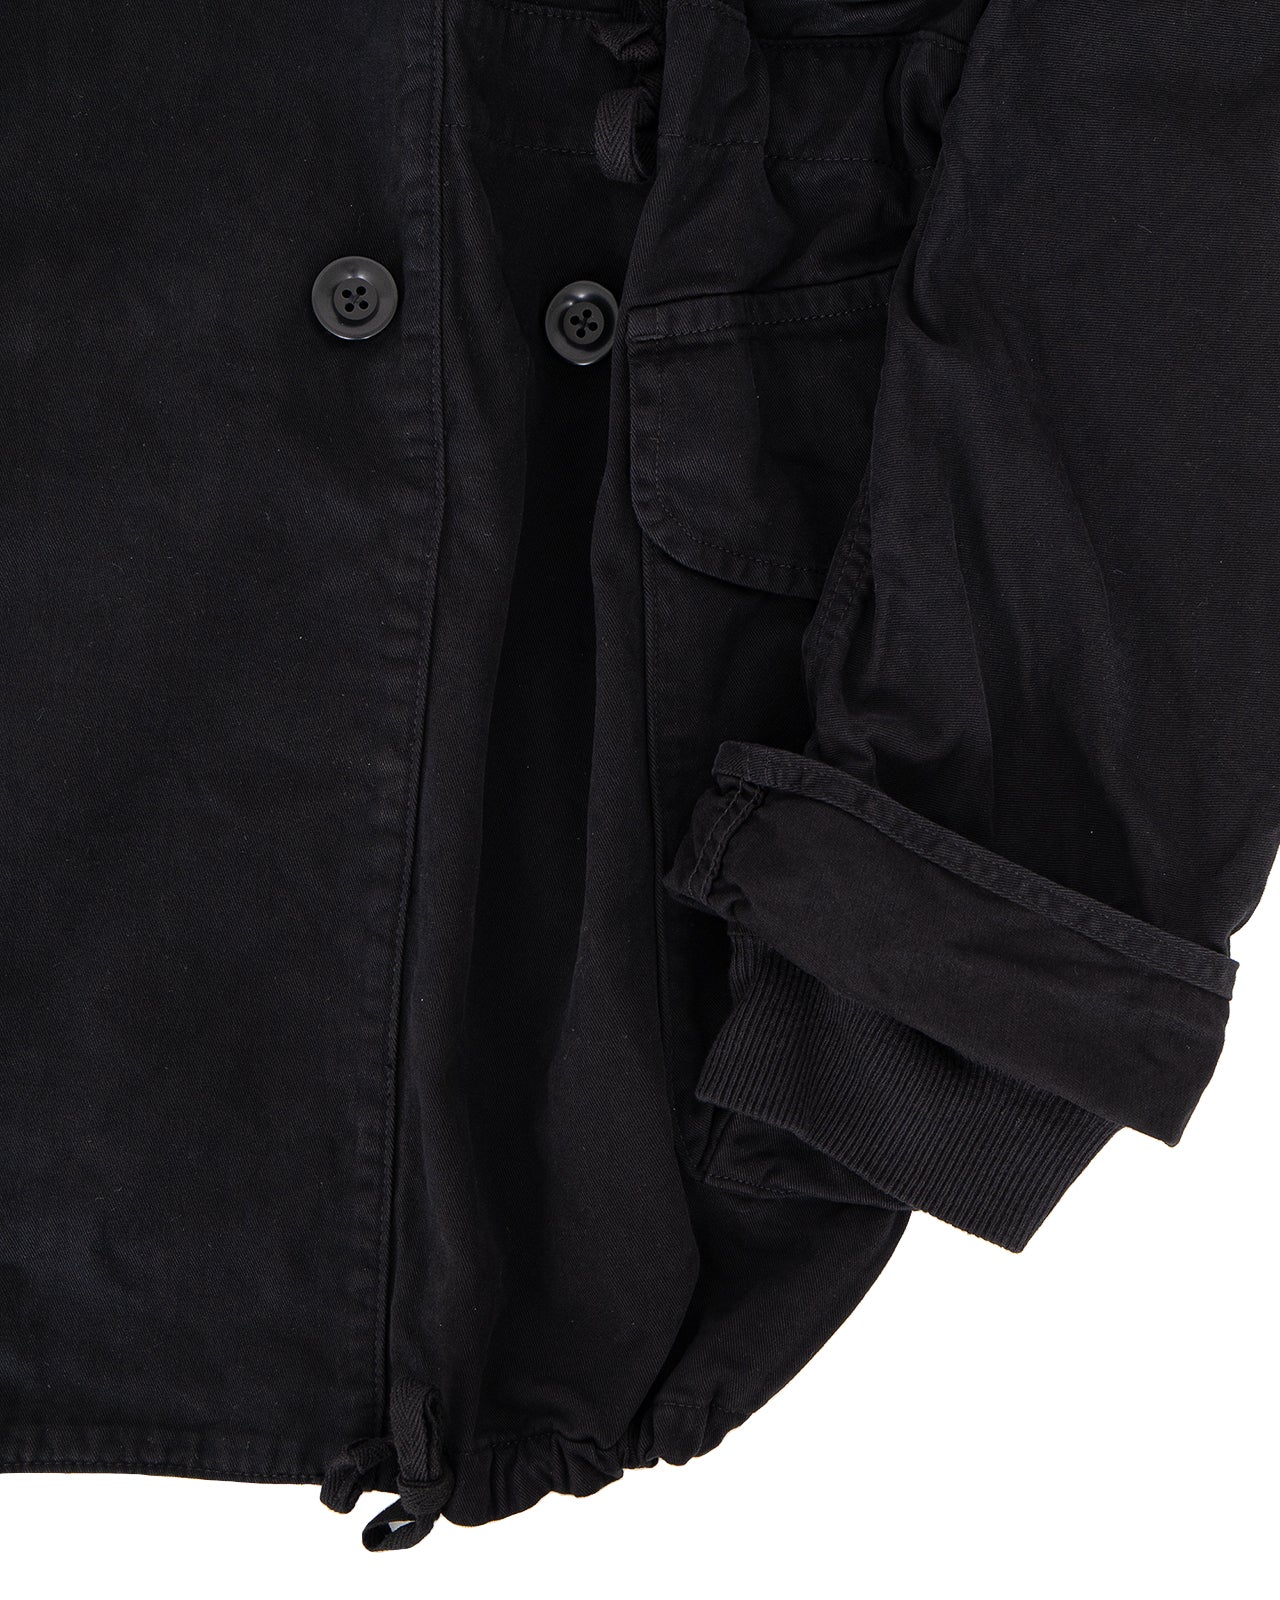 Kapital Katsuragi Cotton Ring Coat, Black